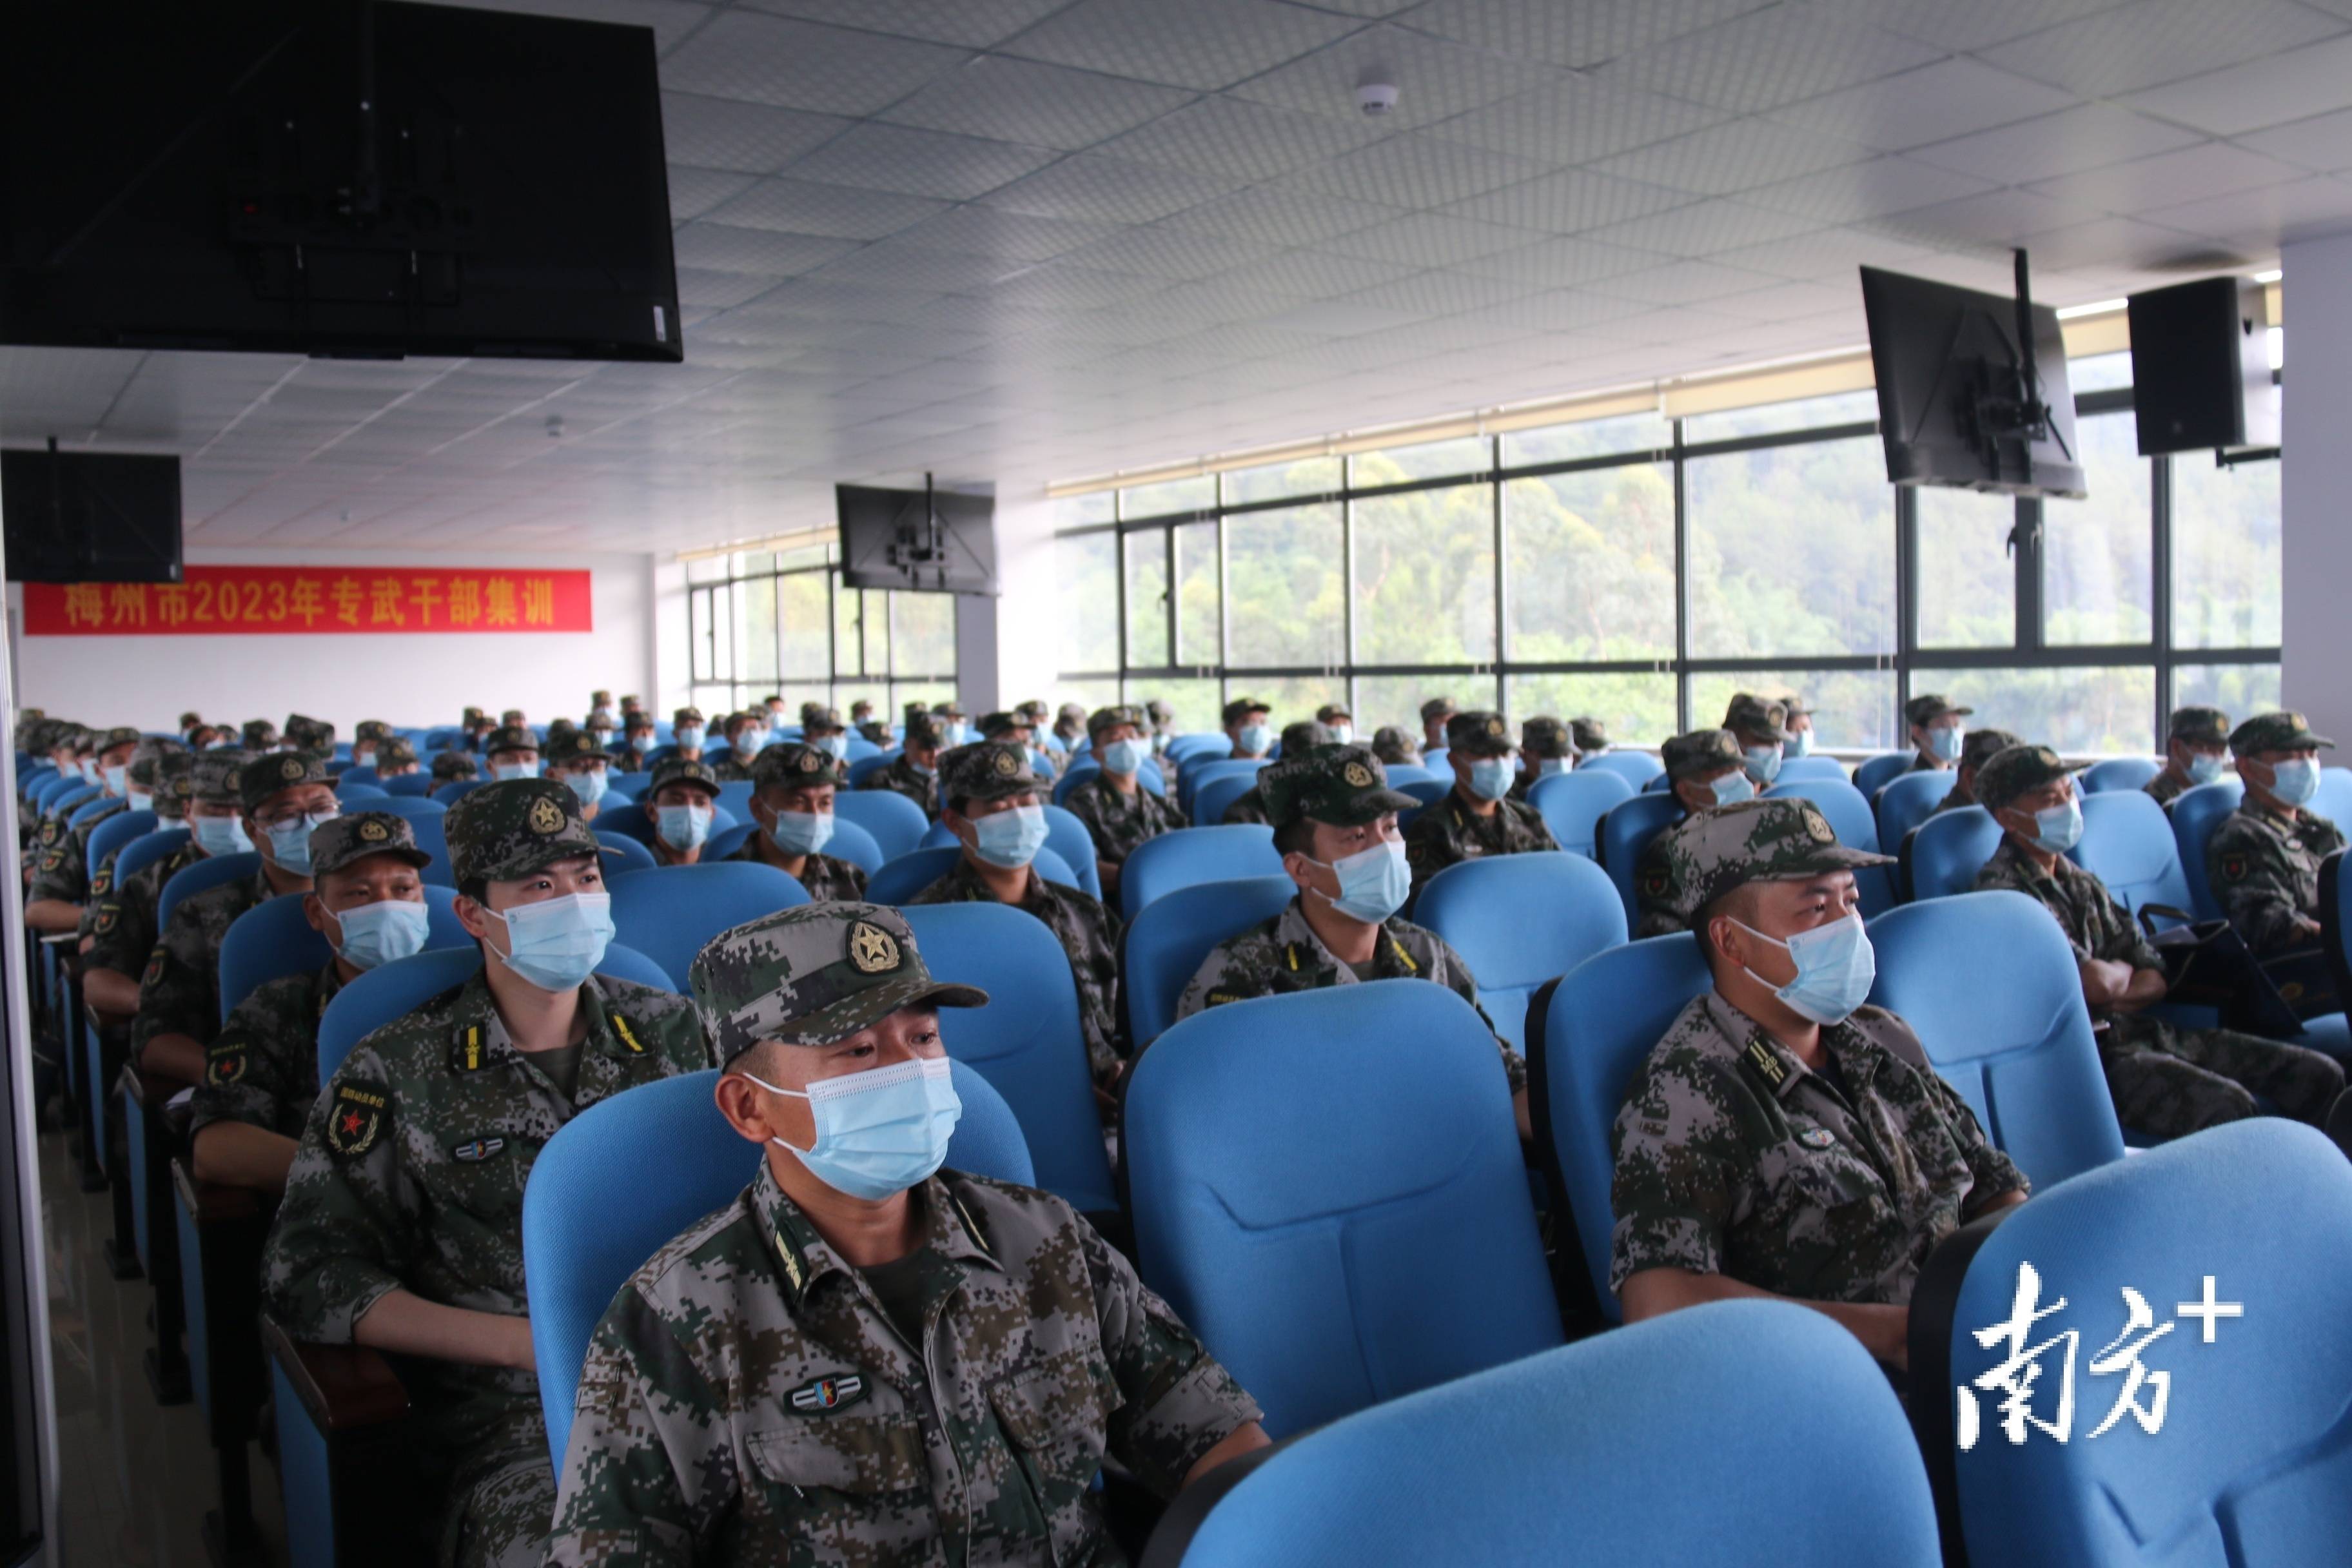 梅州军分区组织专武干部集训,全面提升履职能力